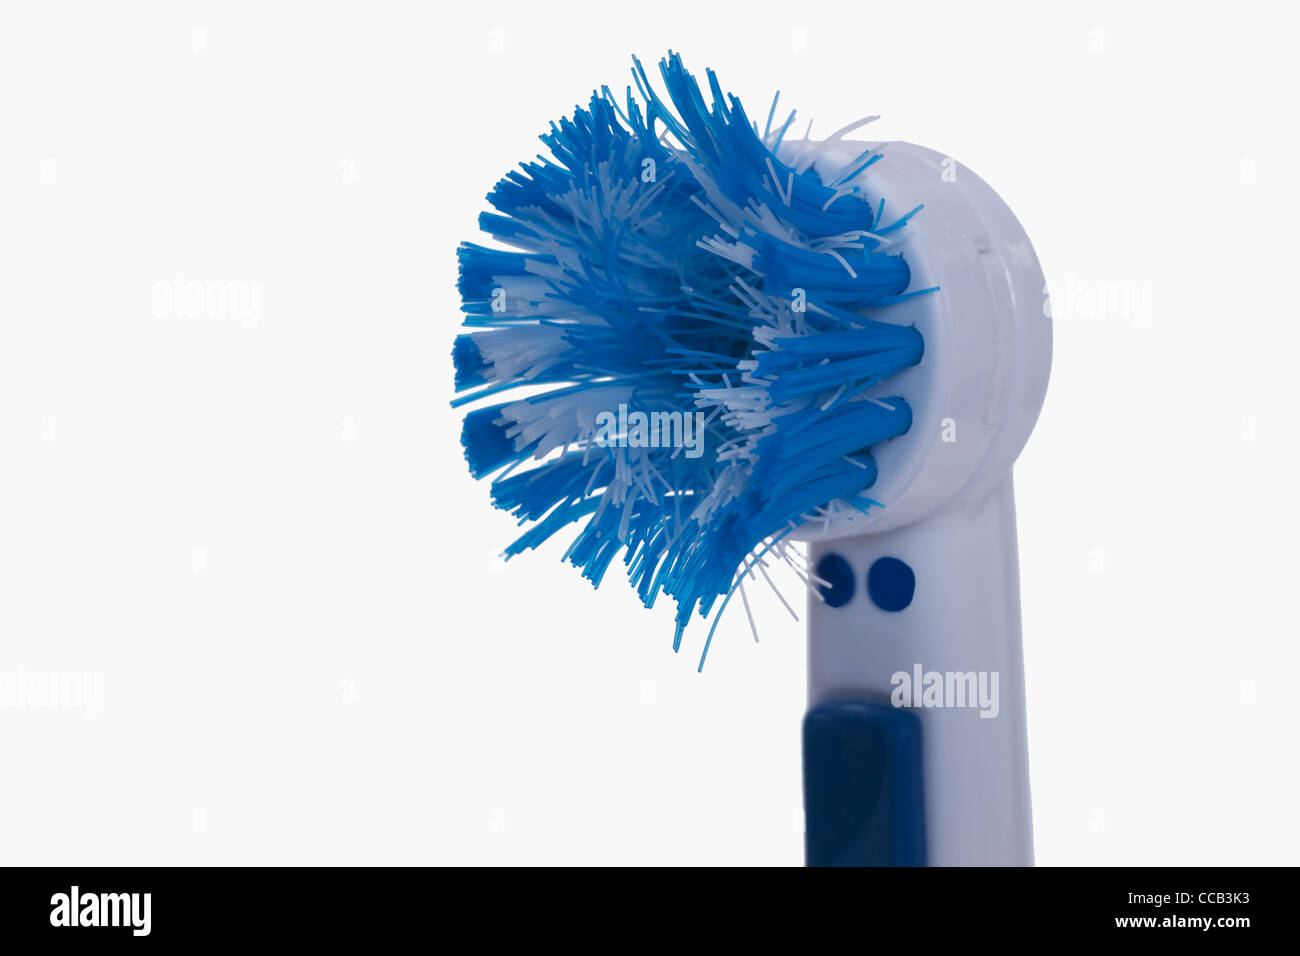 Detailansicht einer alten, blauen Zahnbürste | Detail photo of a old, blue toothbrush Stock Photo